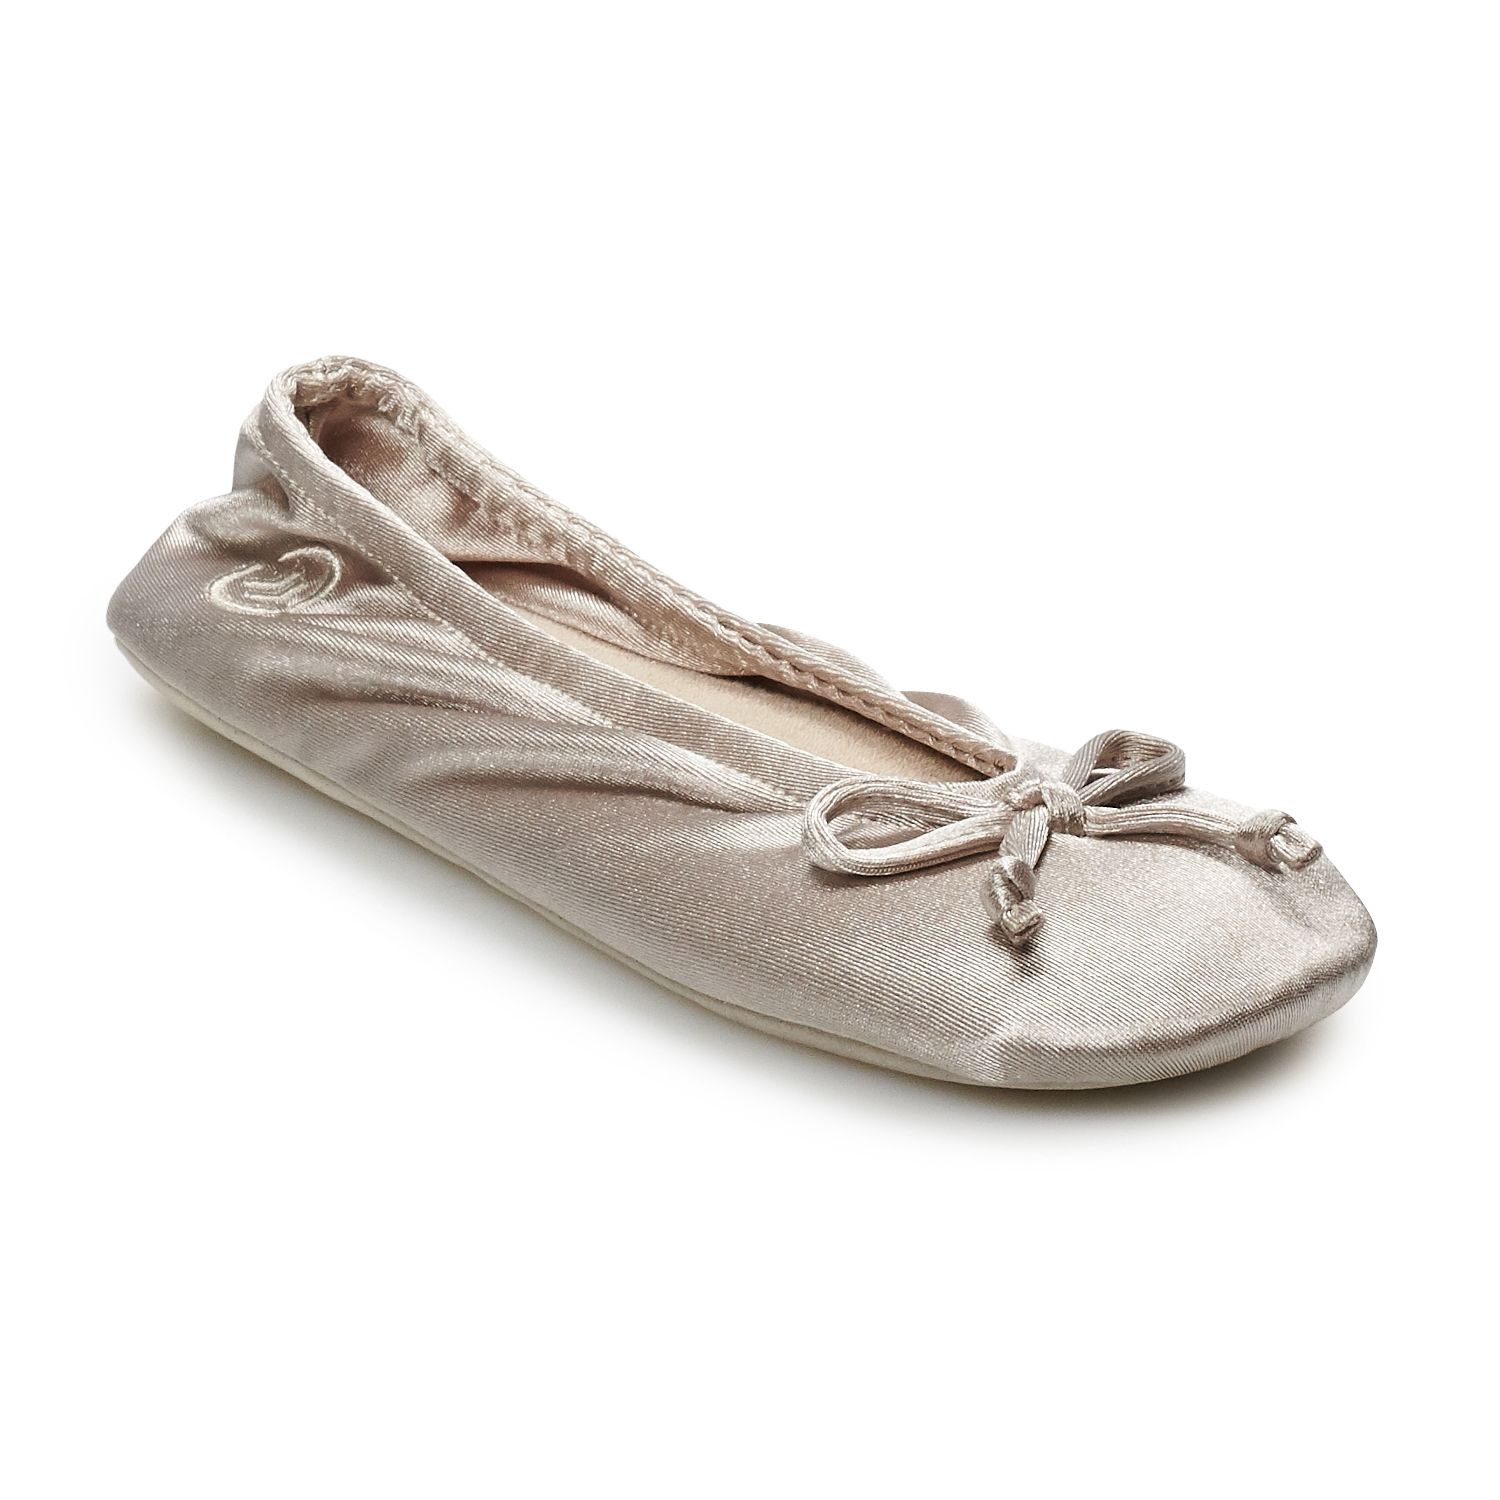 ballet house slippers